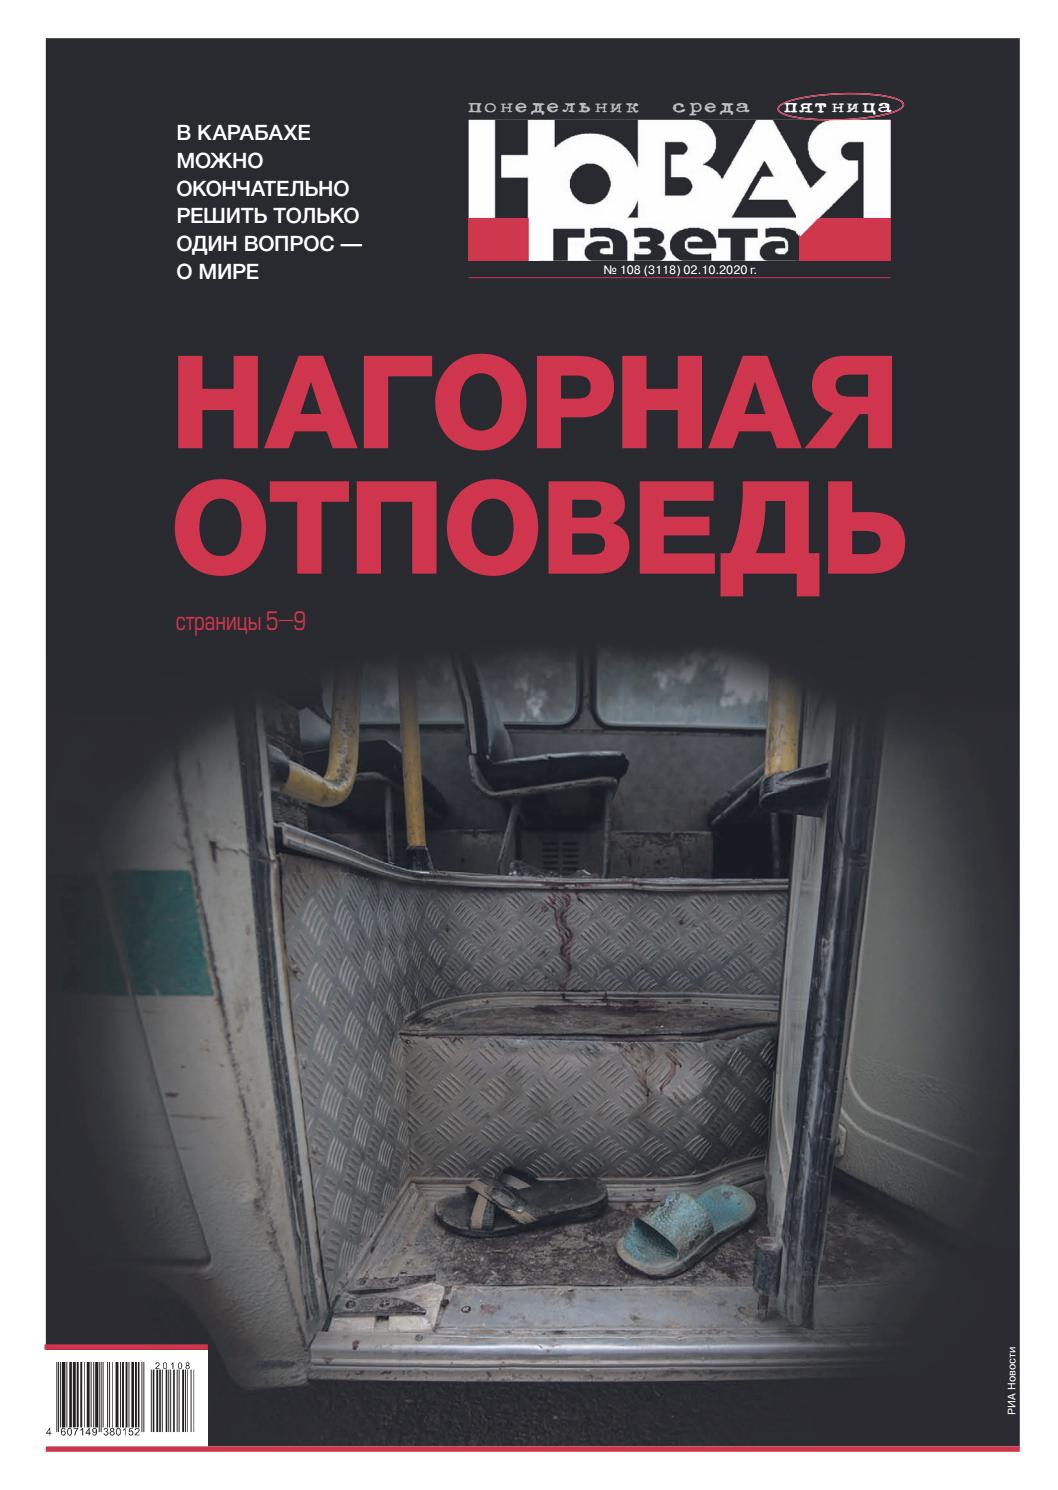 Новая газета №108, октябрь 2020